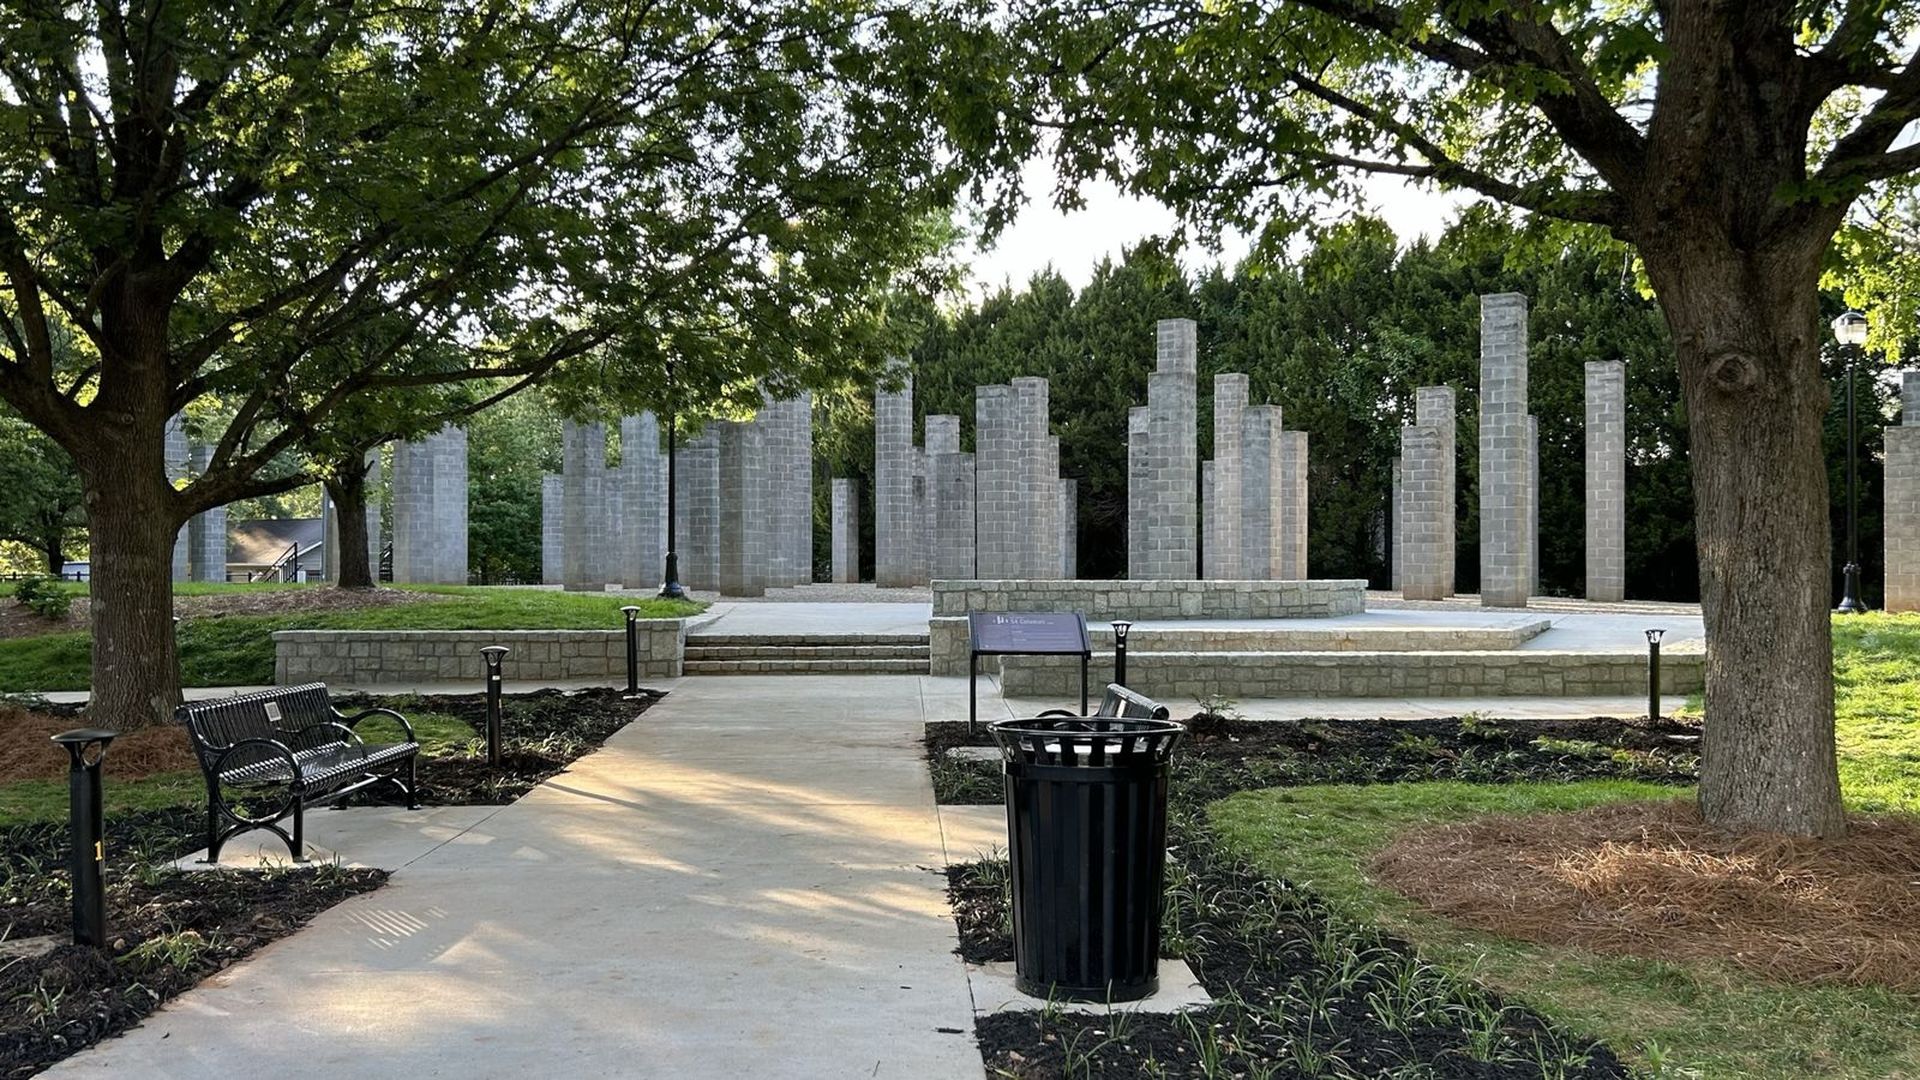 '54 columns' installation